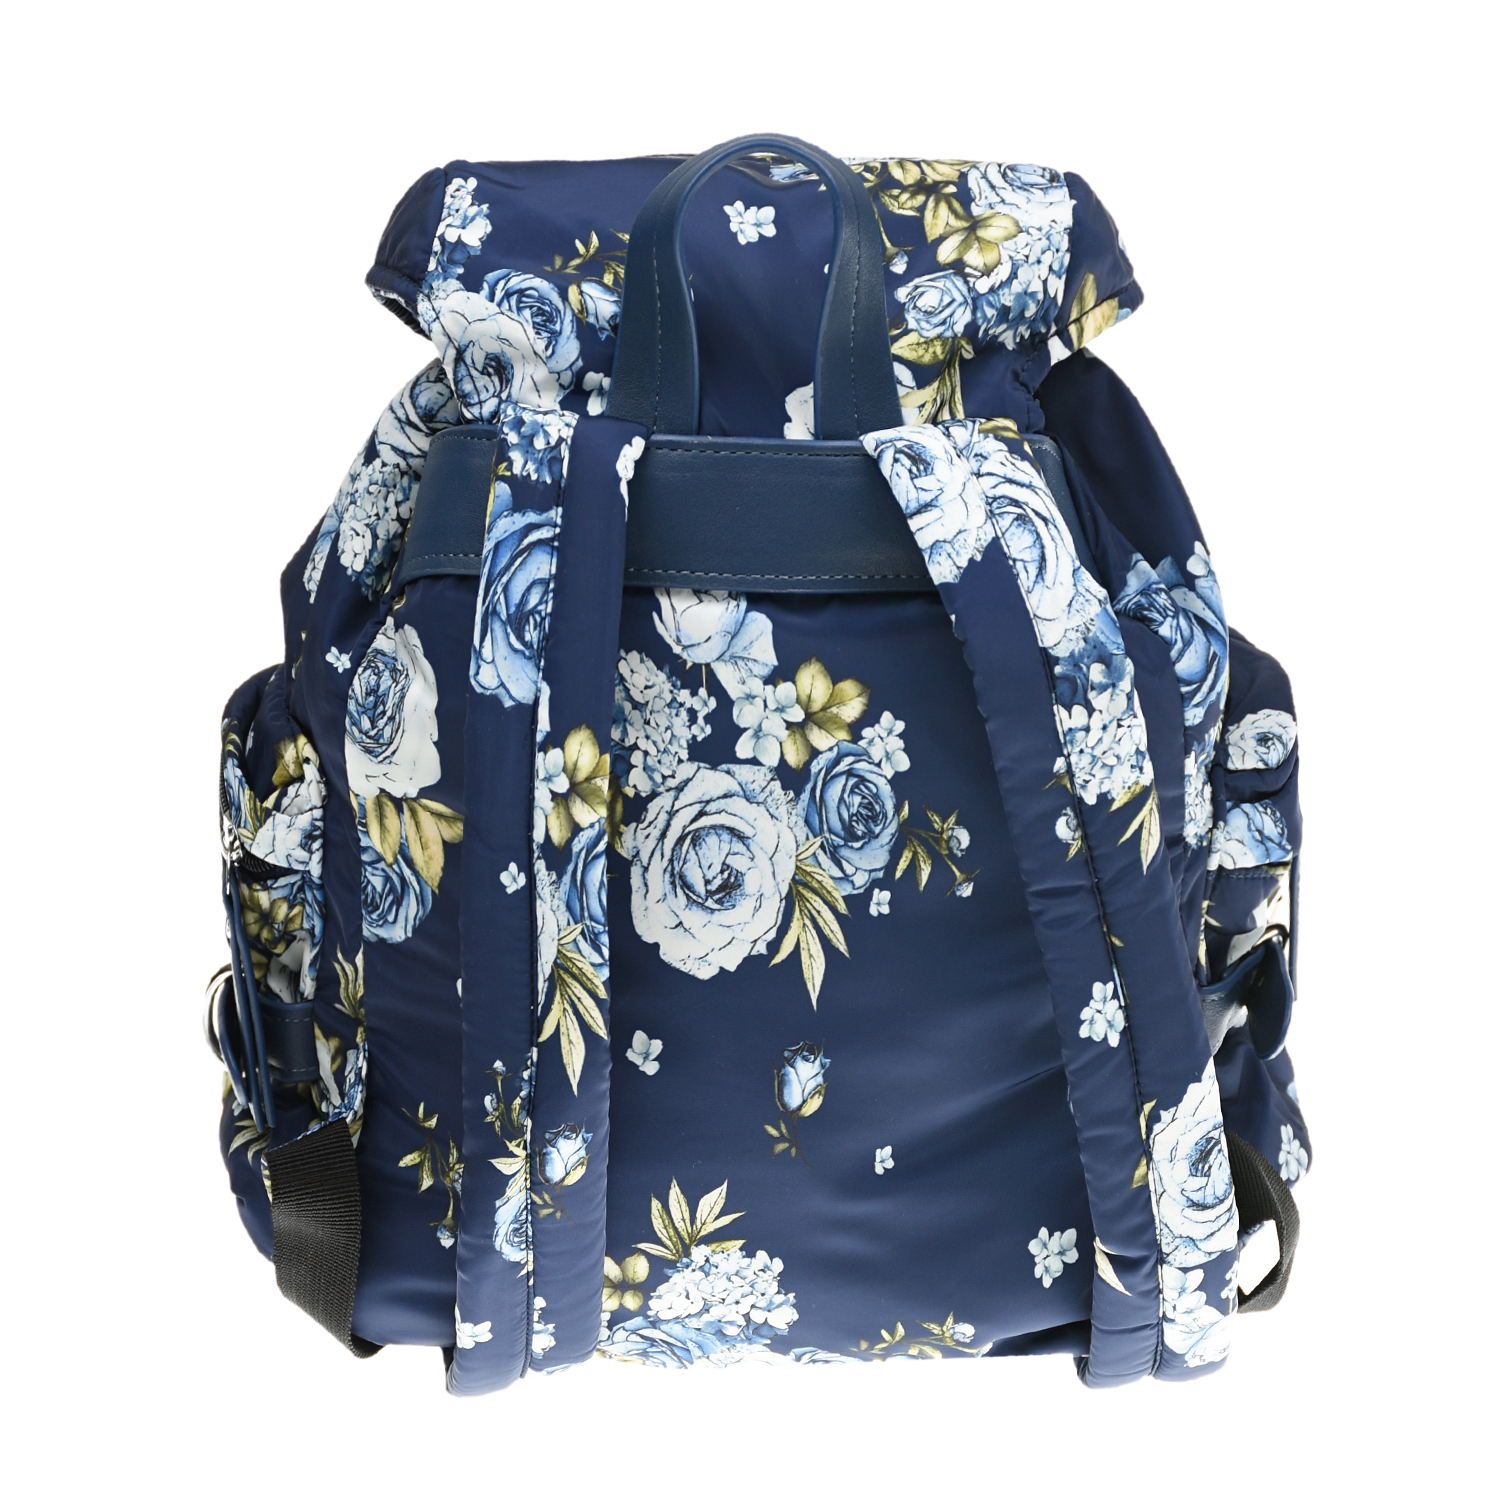 Синий рюкзак с цветочным принтом Monnalisa детский, размер unica - фото 3